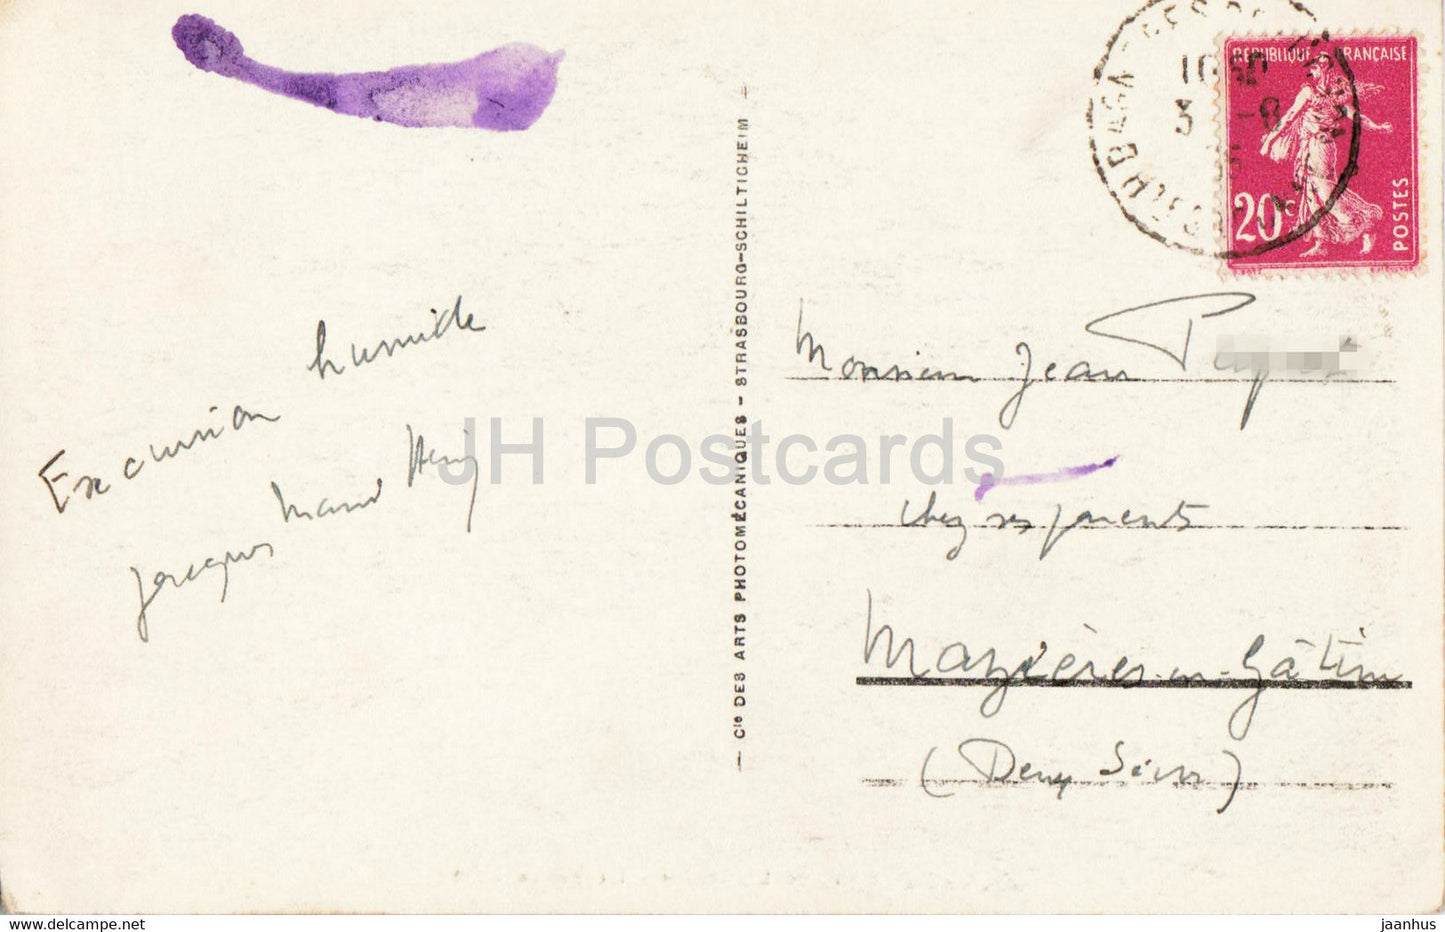 Env de Luchon - La Vallee d'Oo - 112 - old postcard - 1935 - France - used